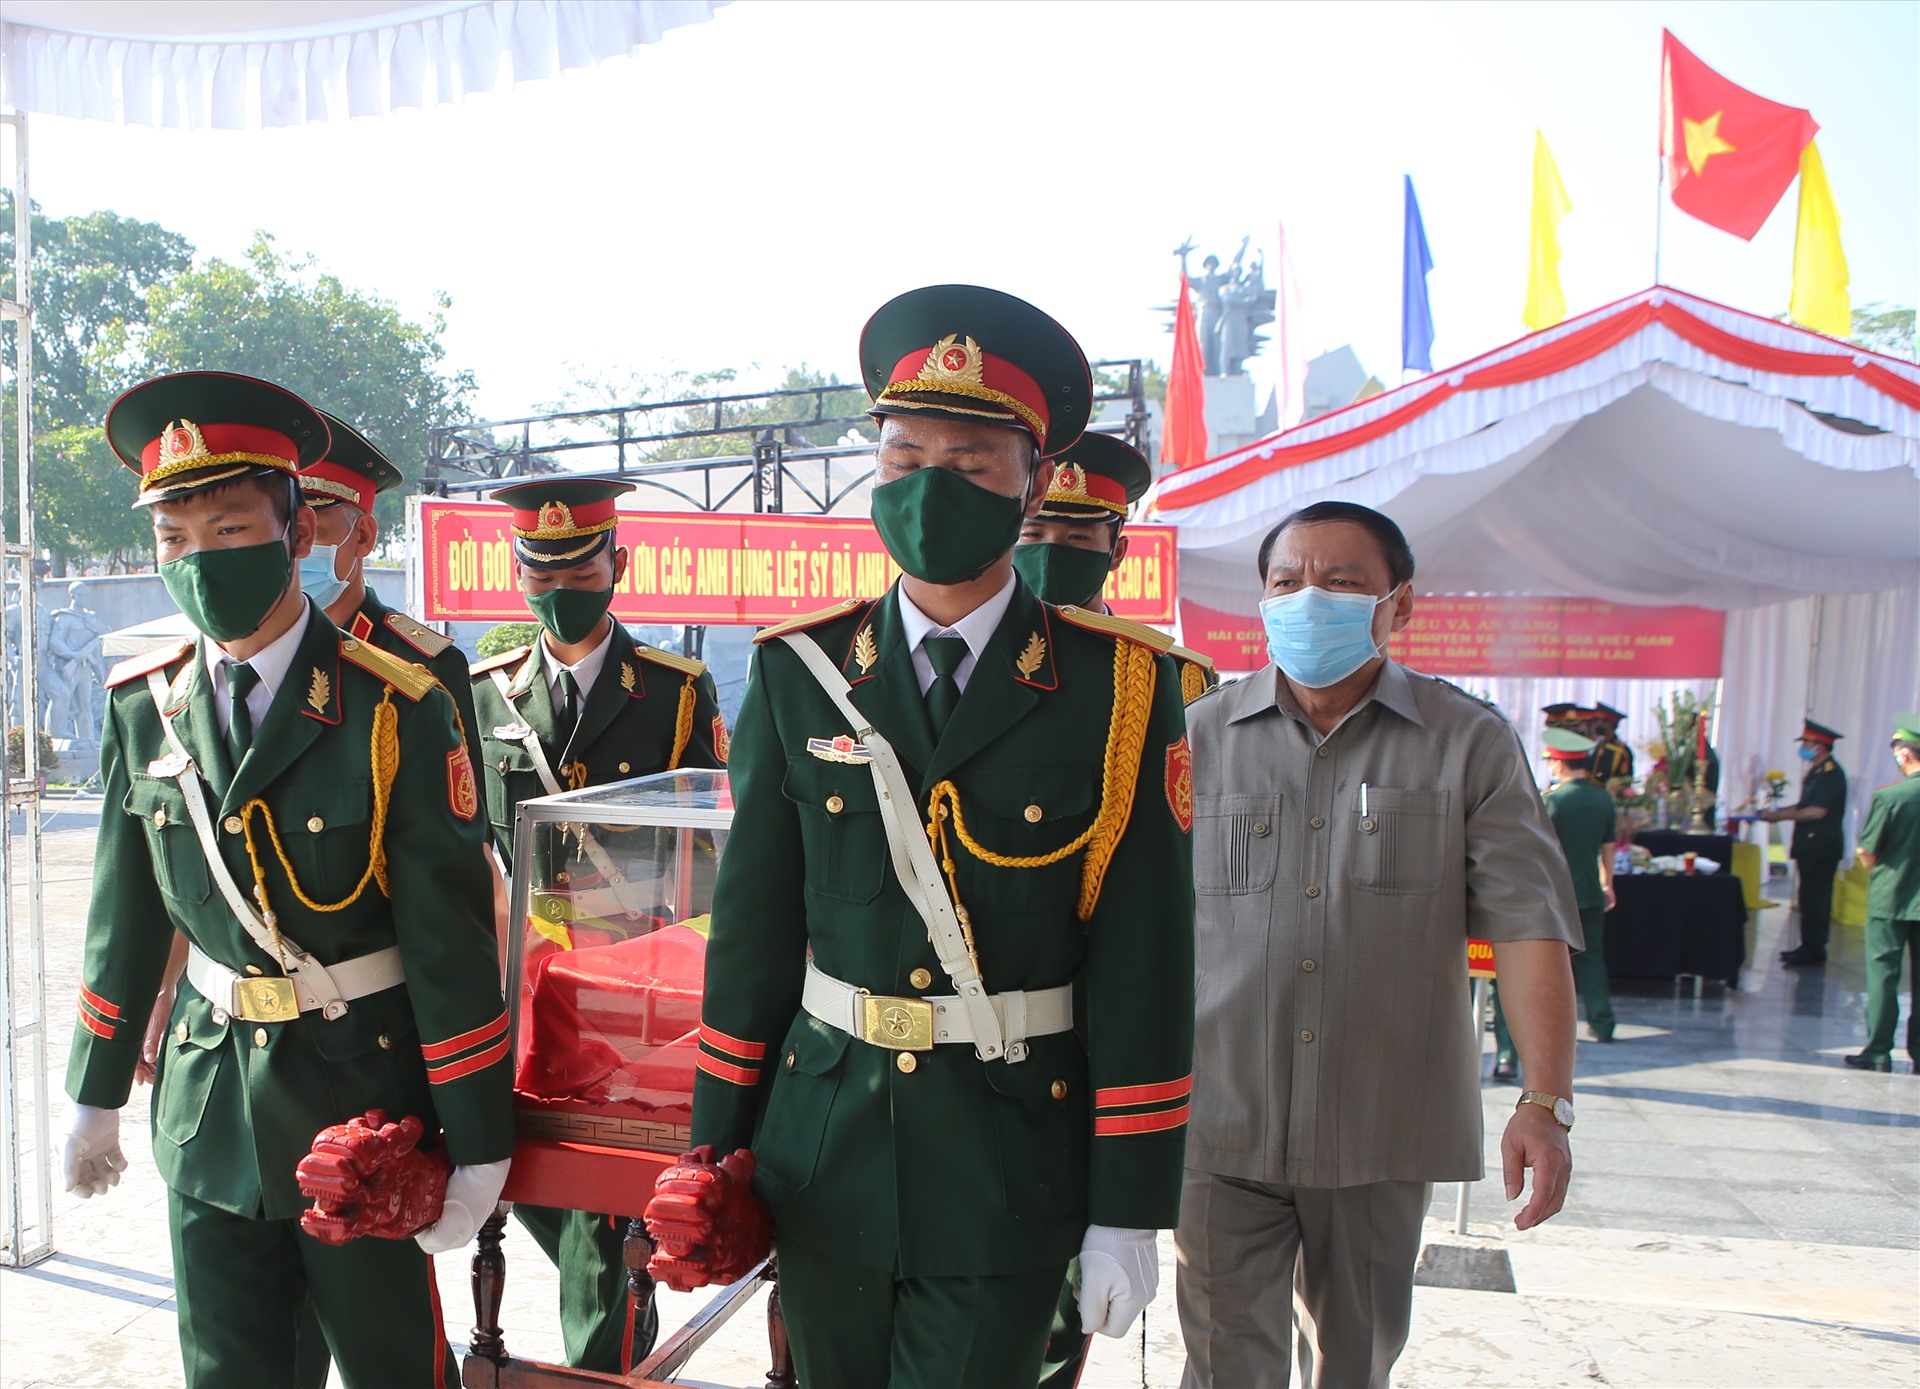 Hài cốt liệt sĩ là quân tình nguyện, chuyên gia Việt Nam hi sinh tại Lào được đưa về Nghĩa trang Liệt sĩ Quốc gia Đường 9. Ảnh: Hưng Thơ.